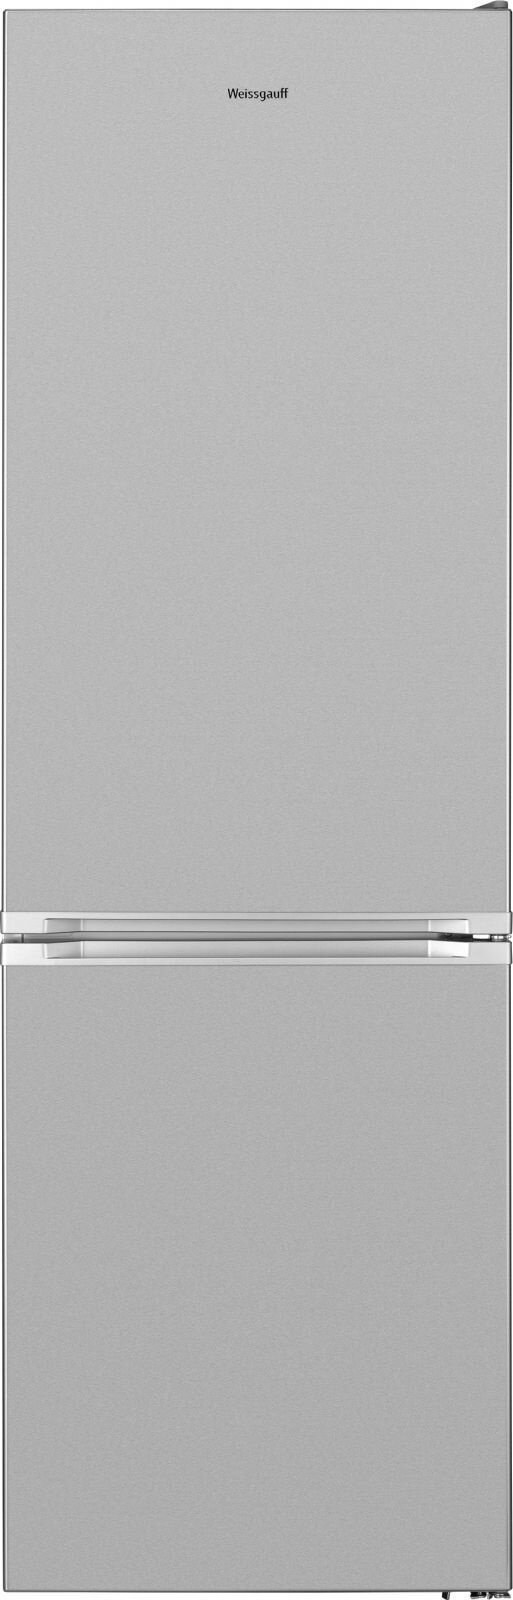 Холодильник двухкамерный WEISSGAUFF WRK 185 X Total NoFrost No Frost, нержавеющая сталь